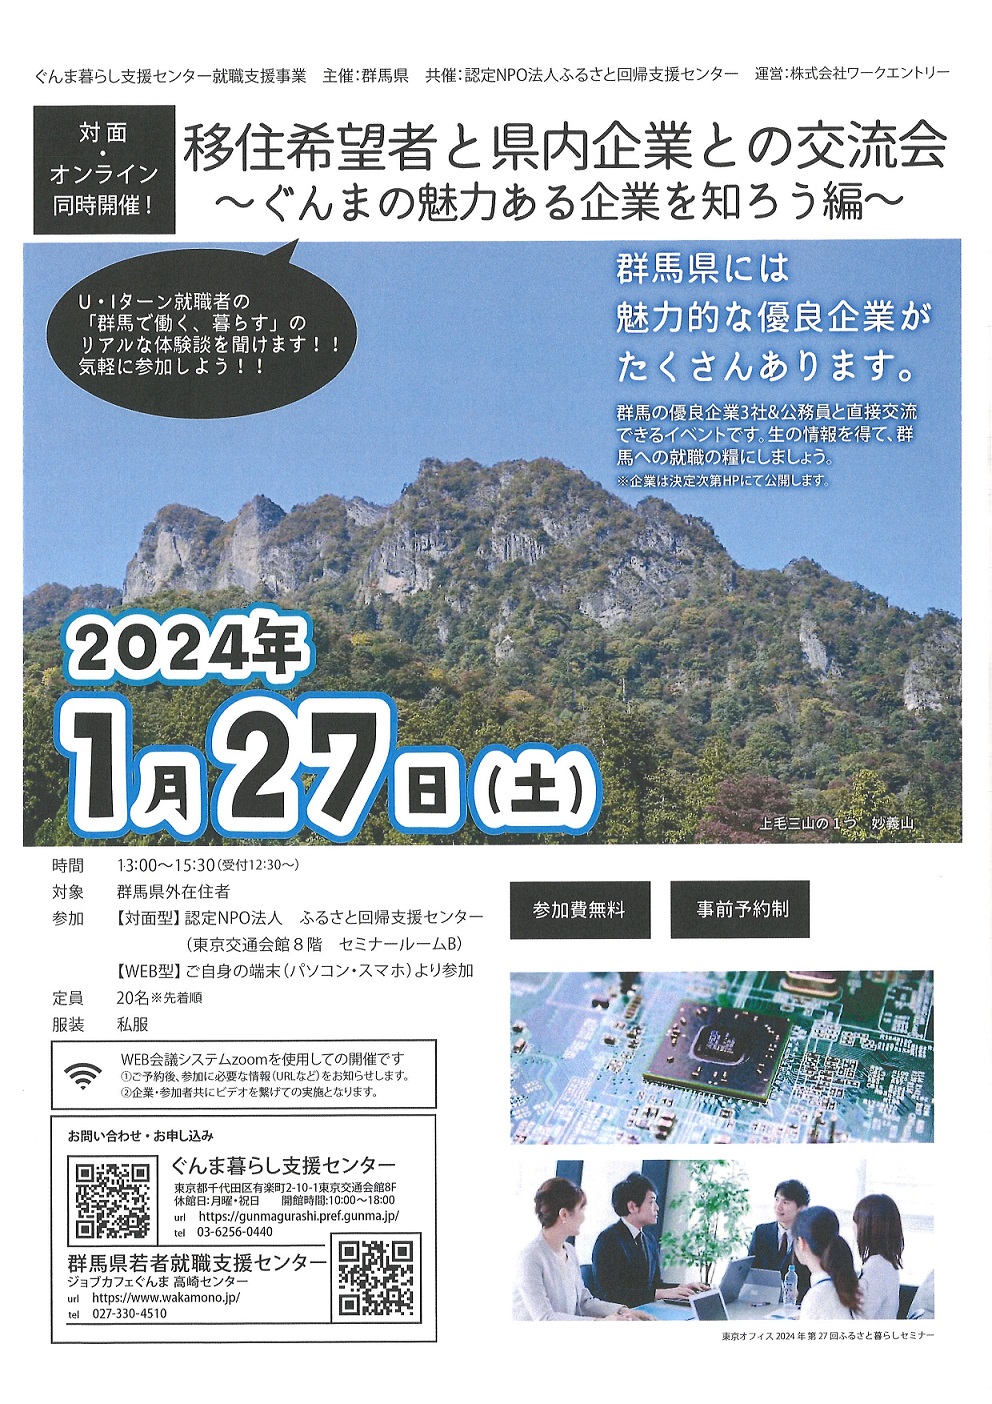 ぐんま暮らし交流会～2024年 | 移住関連イベント情報